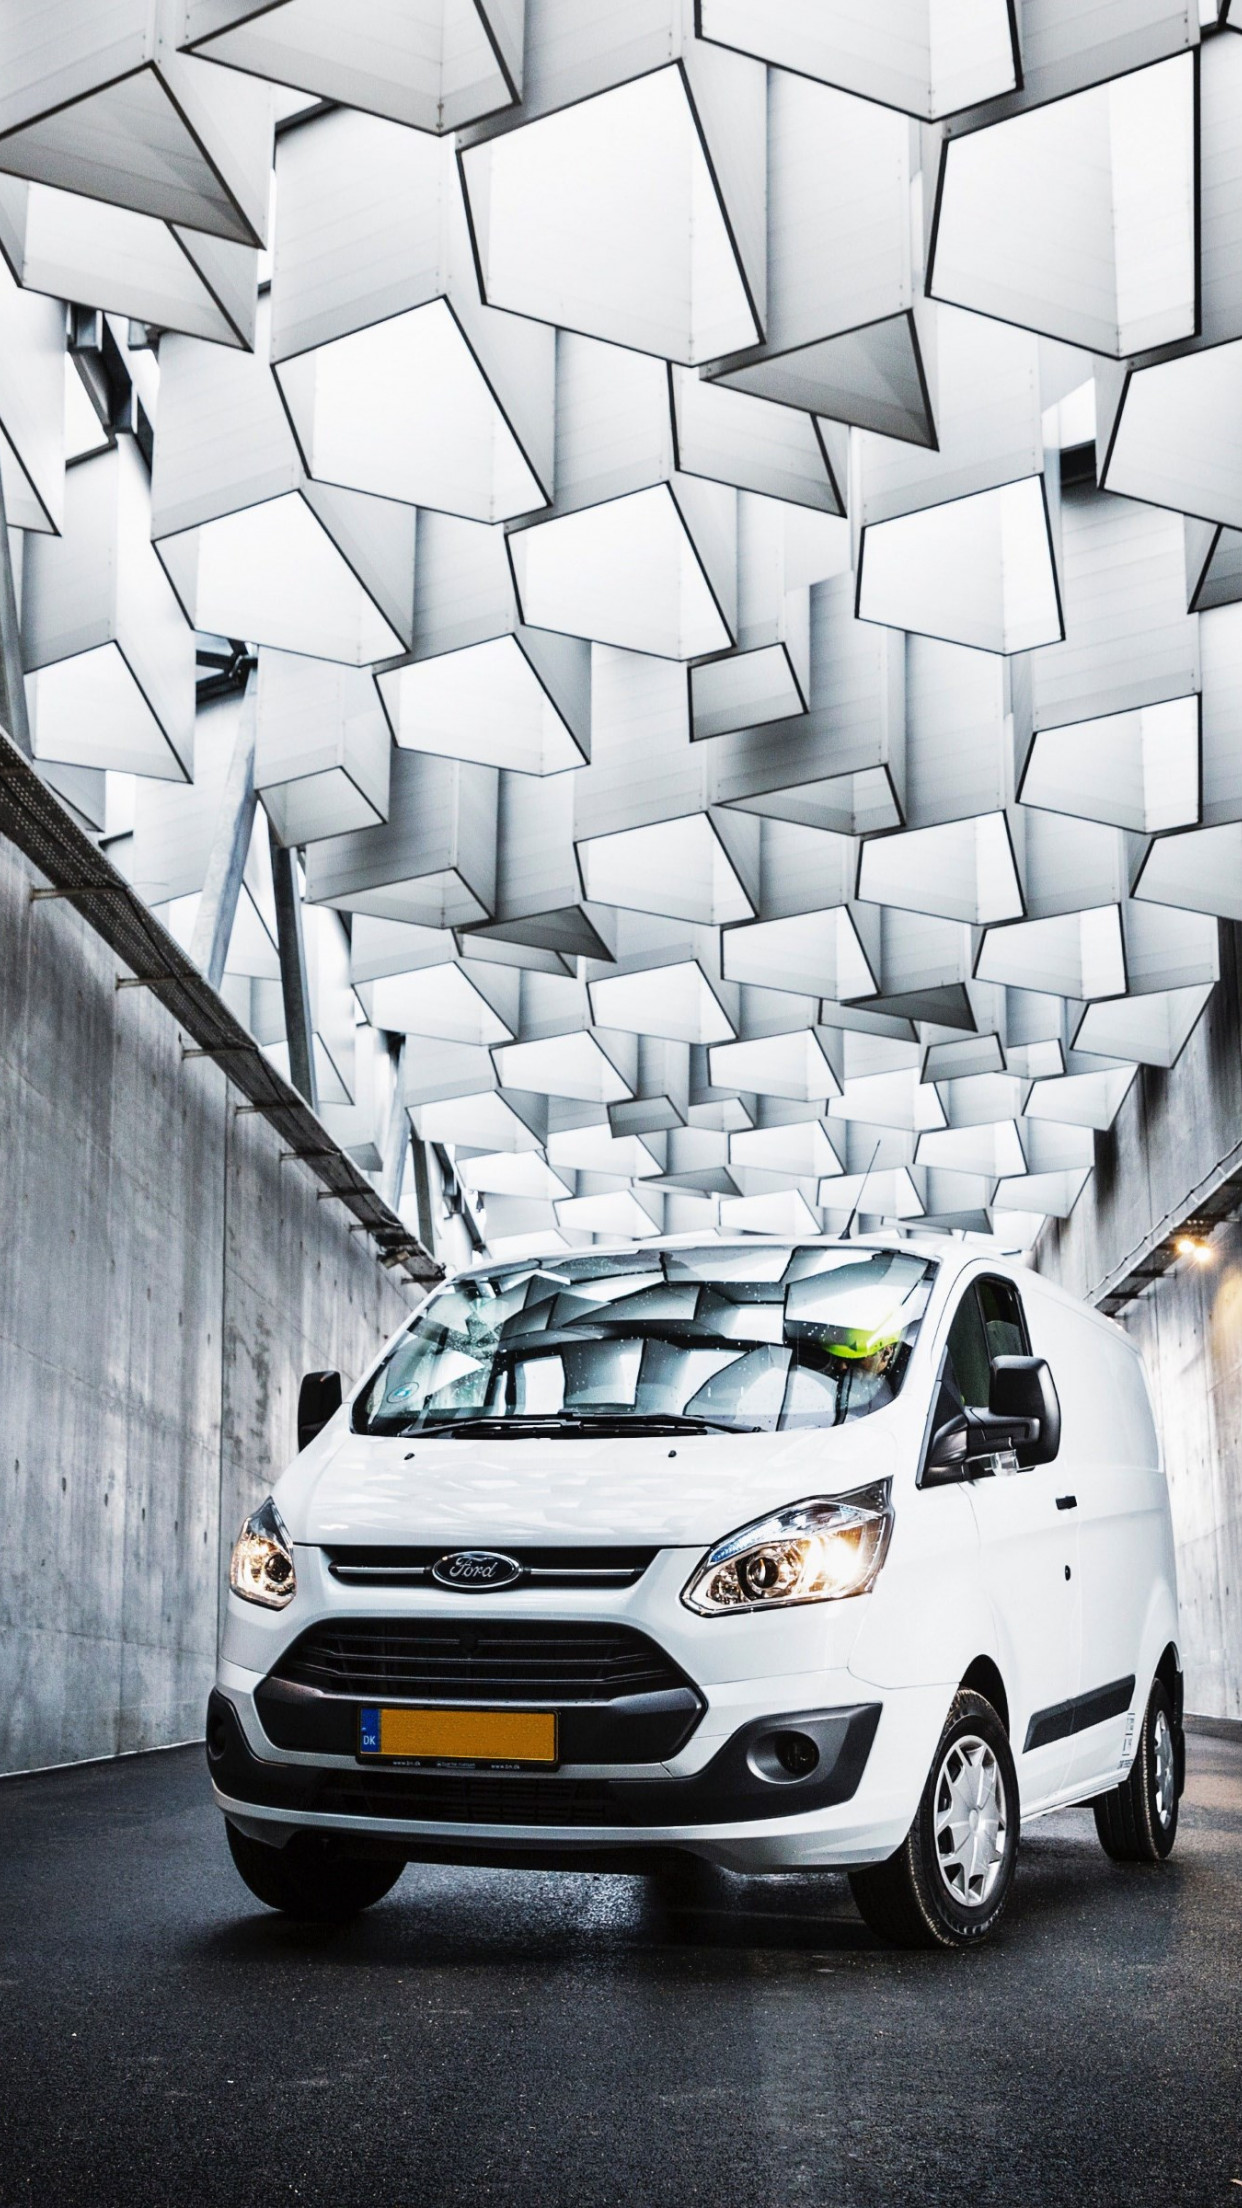 Ford van on the streets of Copenhagen wallpaper 1242x2208